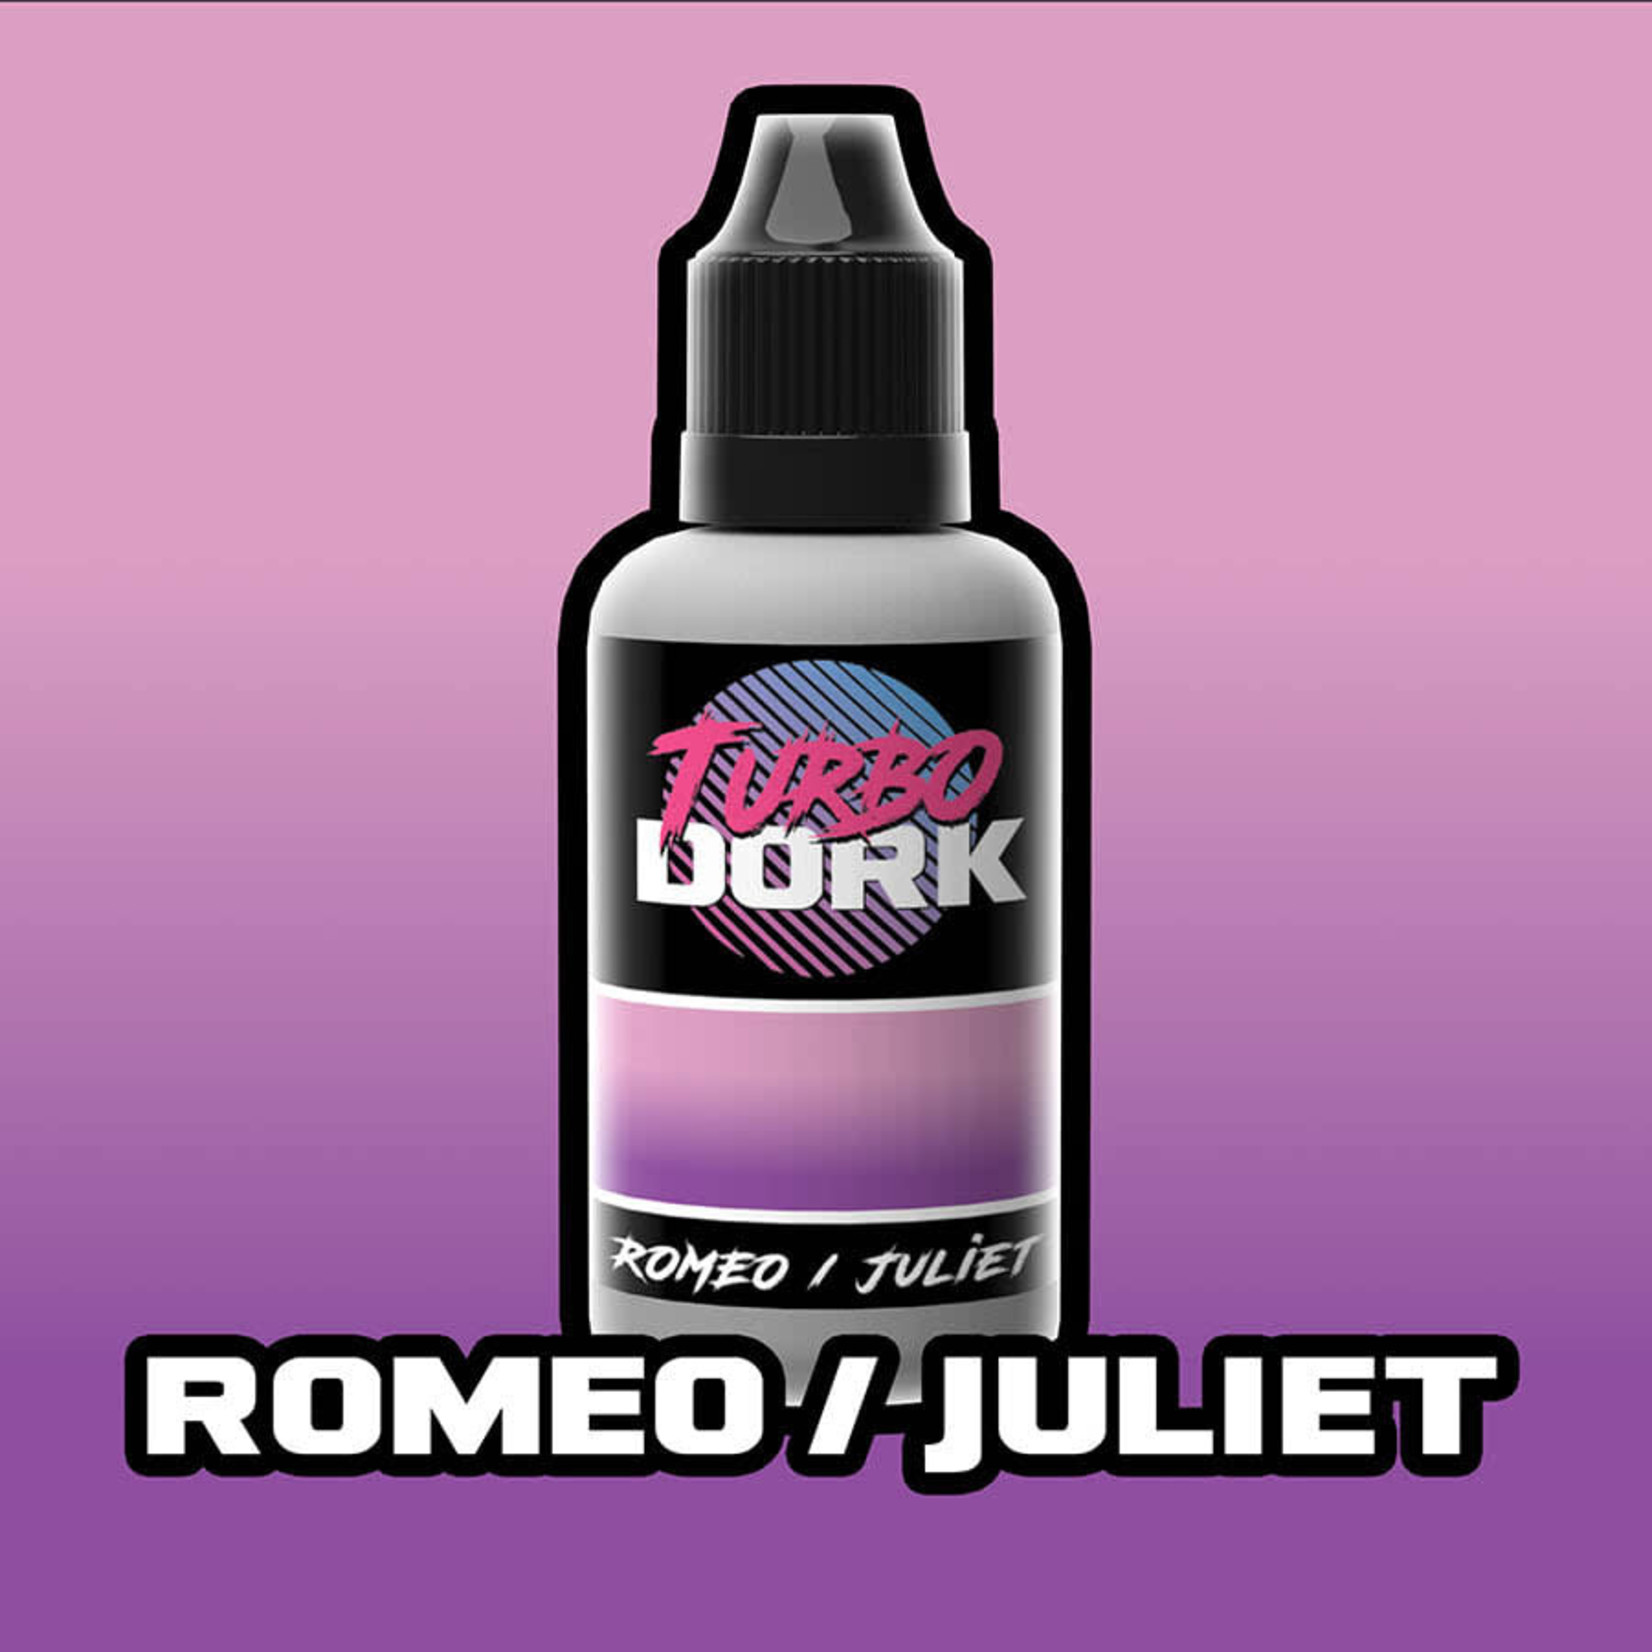 Turbo Dork Romeo/Juliet Turboshift Acrylic Paint 20ml Bottle